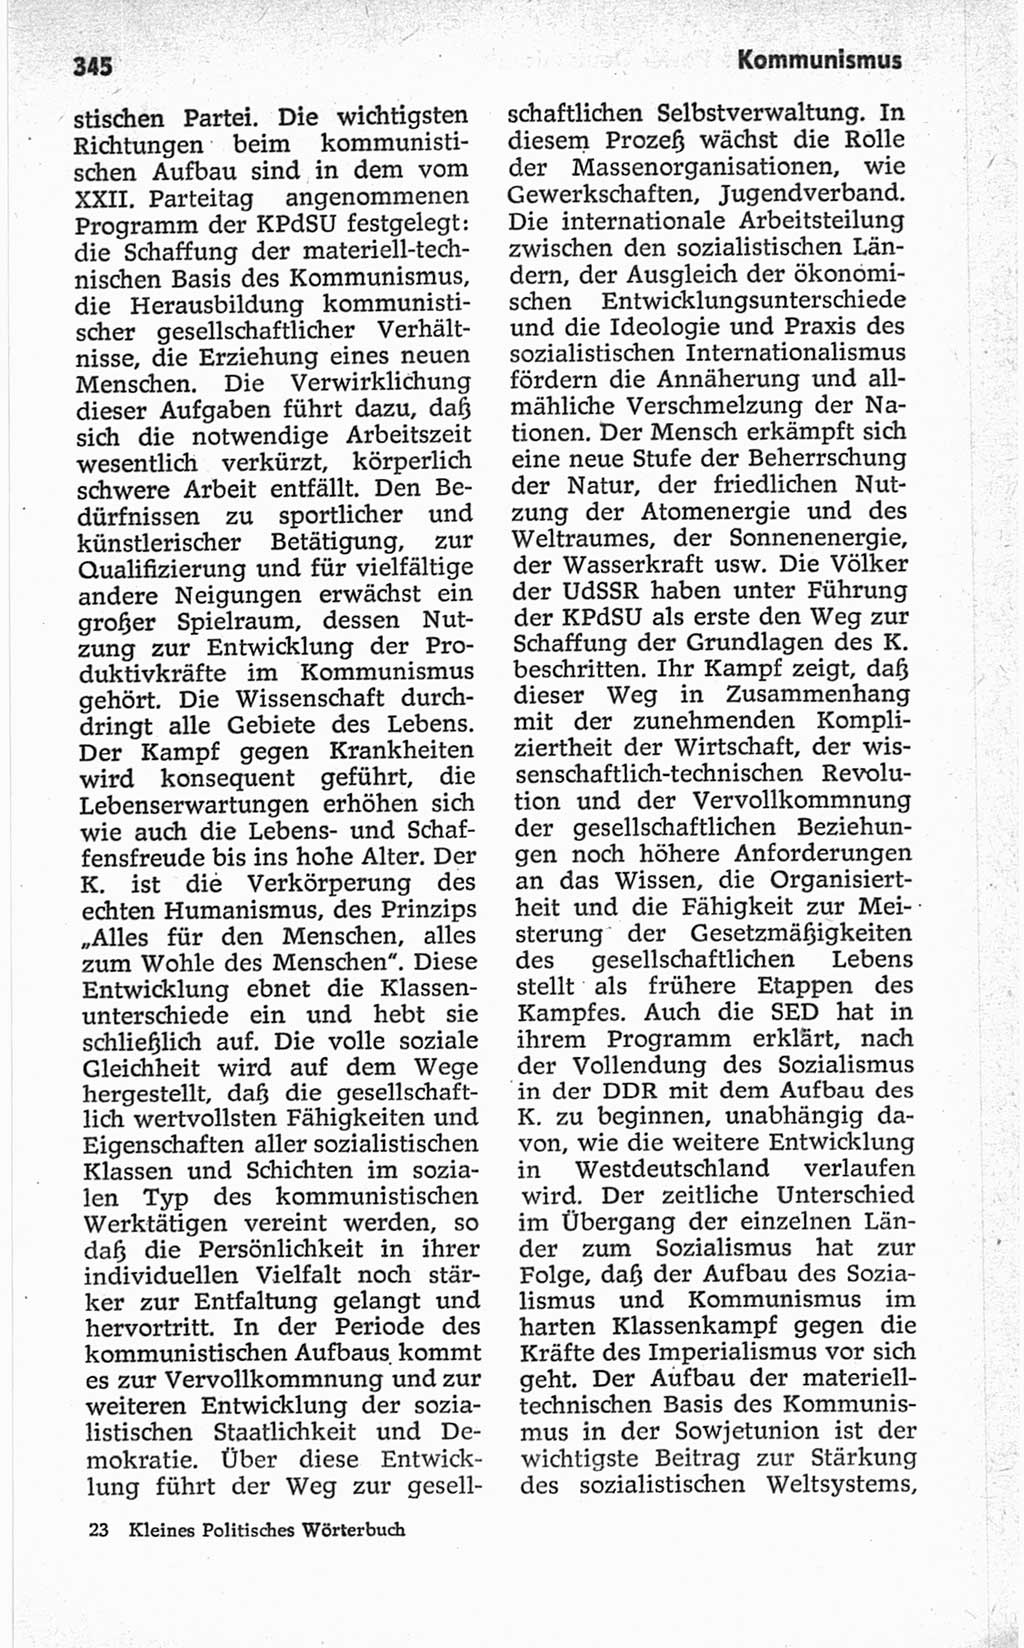 Kleines politisches Wörterbuch [Deutsche Demokratische Republik (DDR)] 1967, Seite 345 (Kl. pol. Wb. DDR 1967, S. 345)